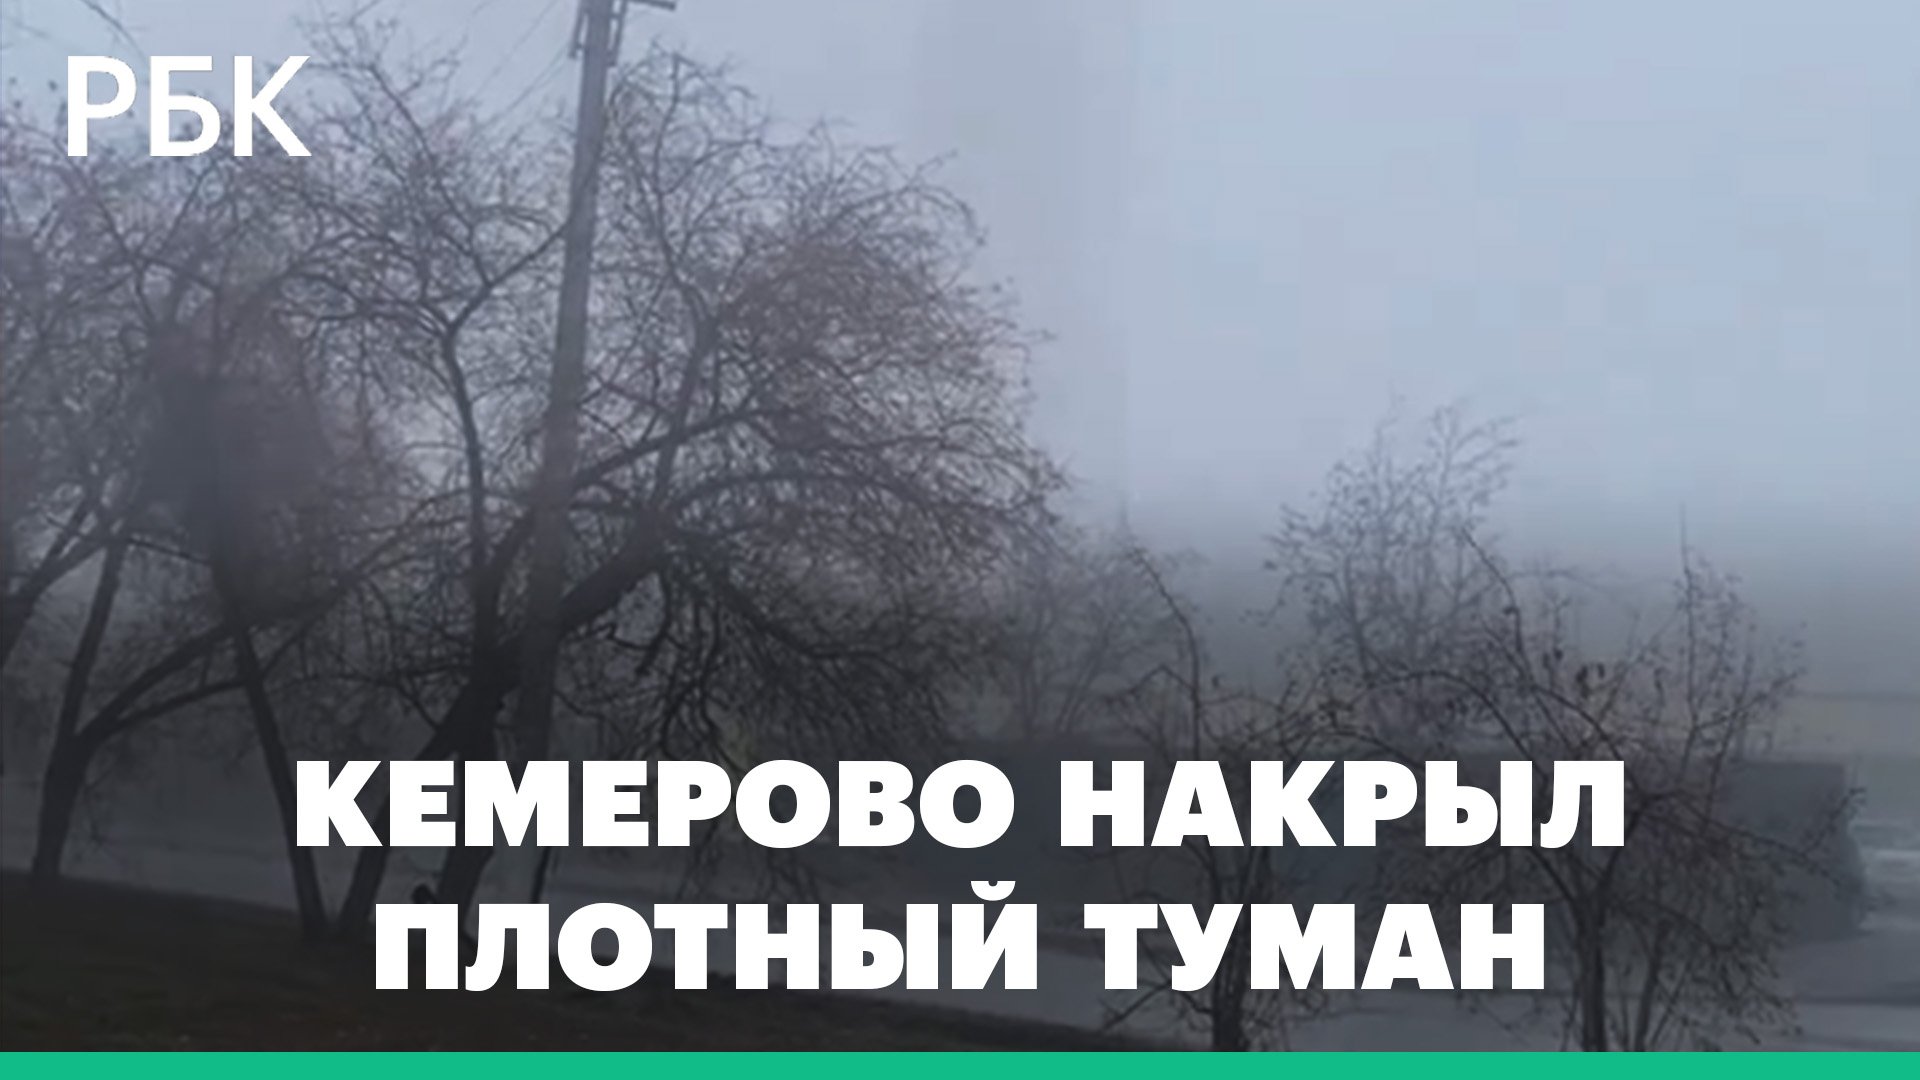 Плотный туман, едкий запах и плохая видимость в Кемерово